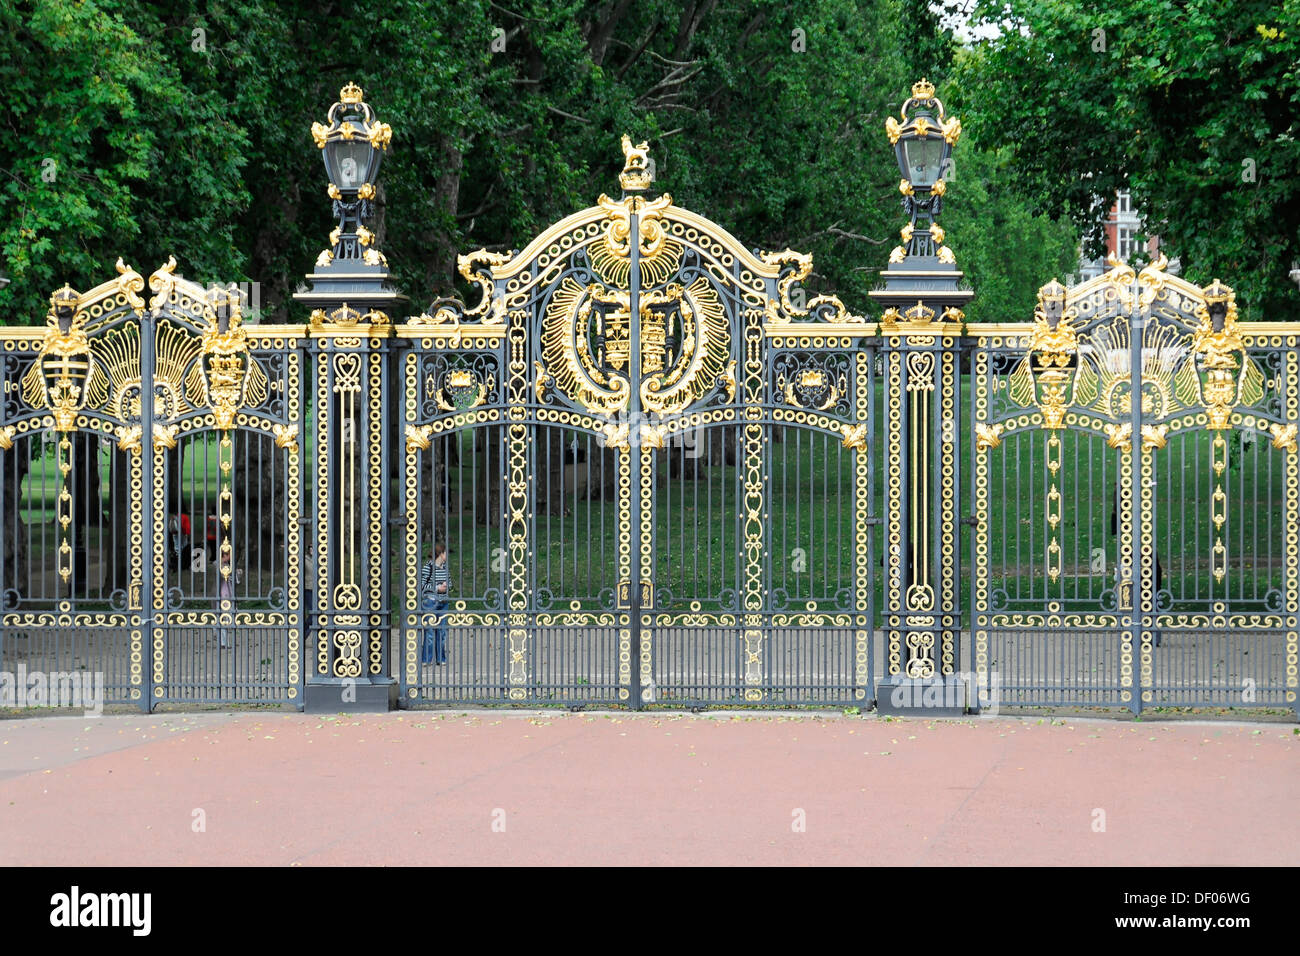 Entrance, Royal Coat of Arms of England on the gate, next to Buckingham Palace, London, England, United Kingdom, Europe Stock Photo